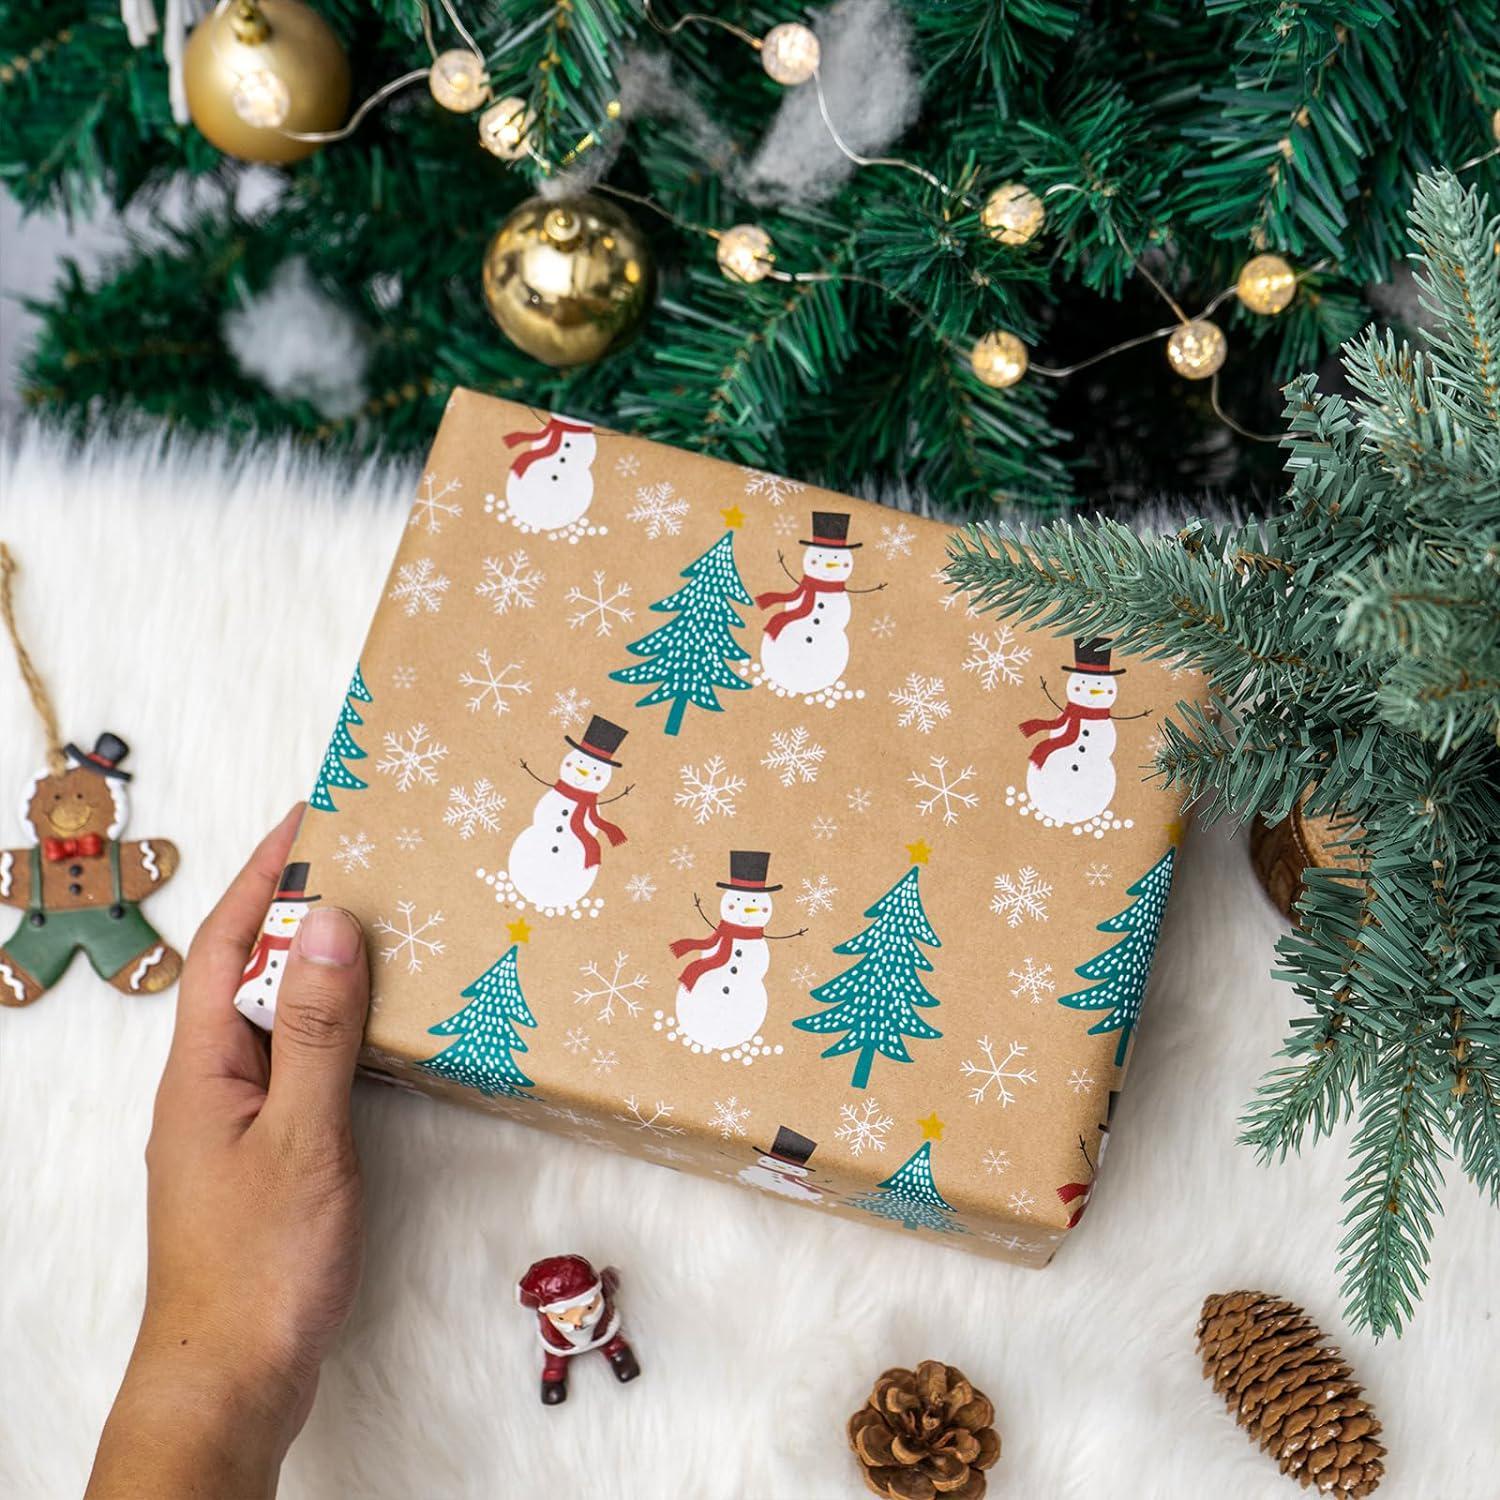 LeZakaa Reversible Christmas Wrapping Paper - Jumbo Roll